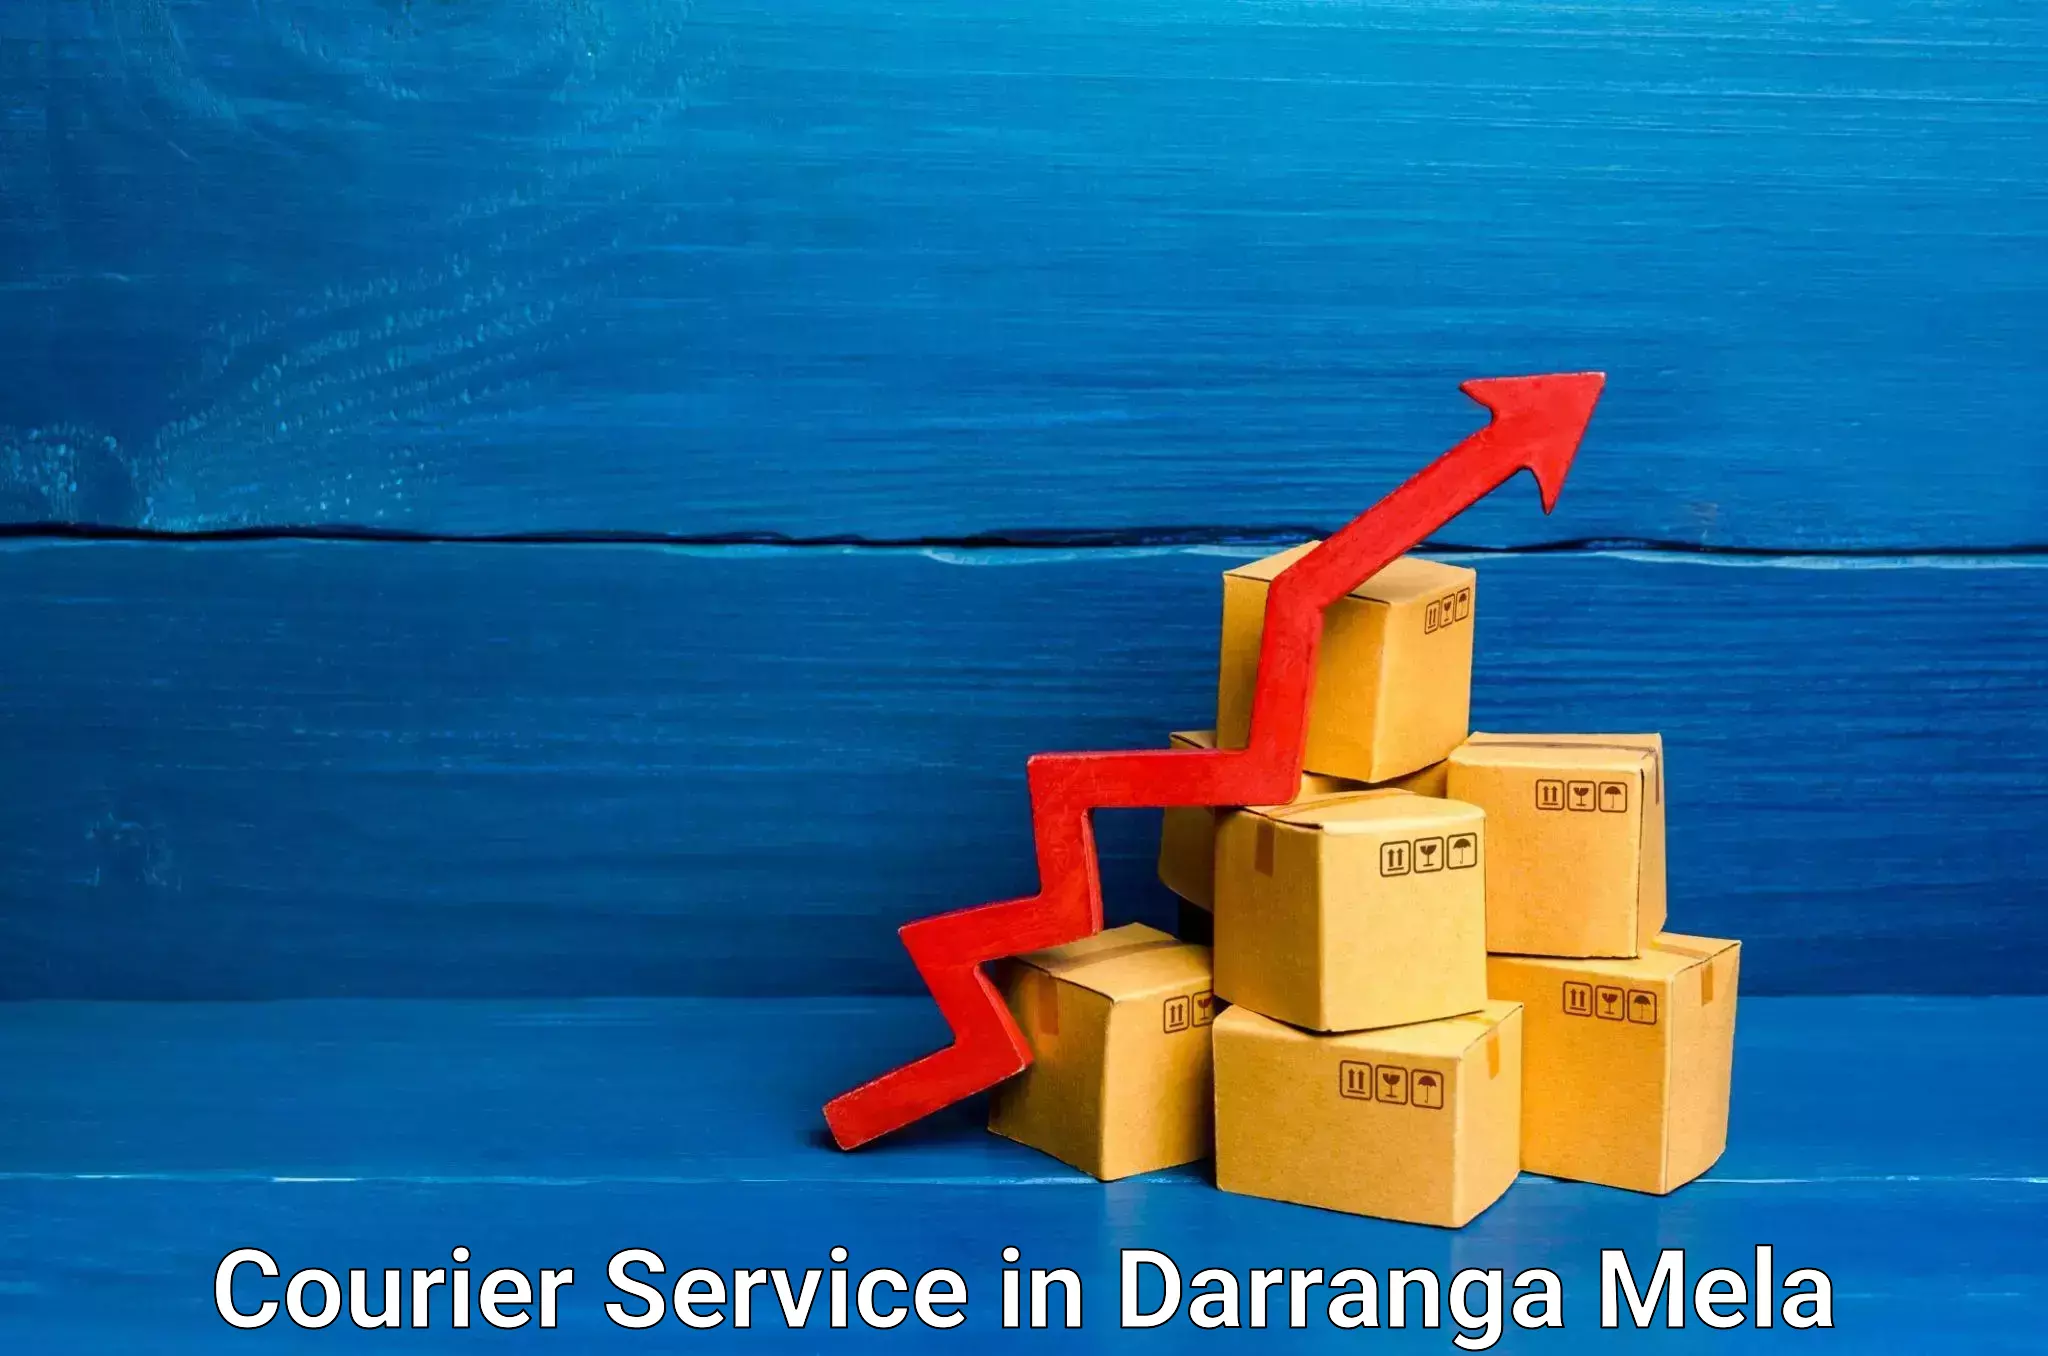 Courier membership in Darranga Mela